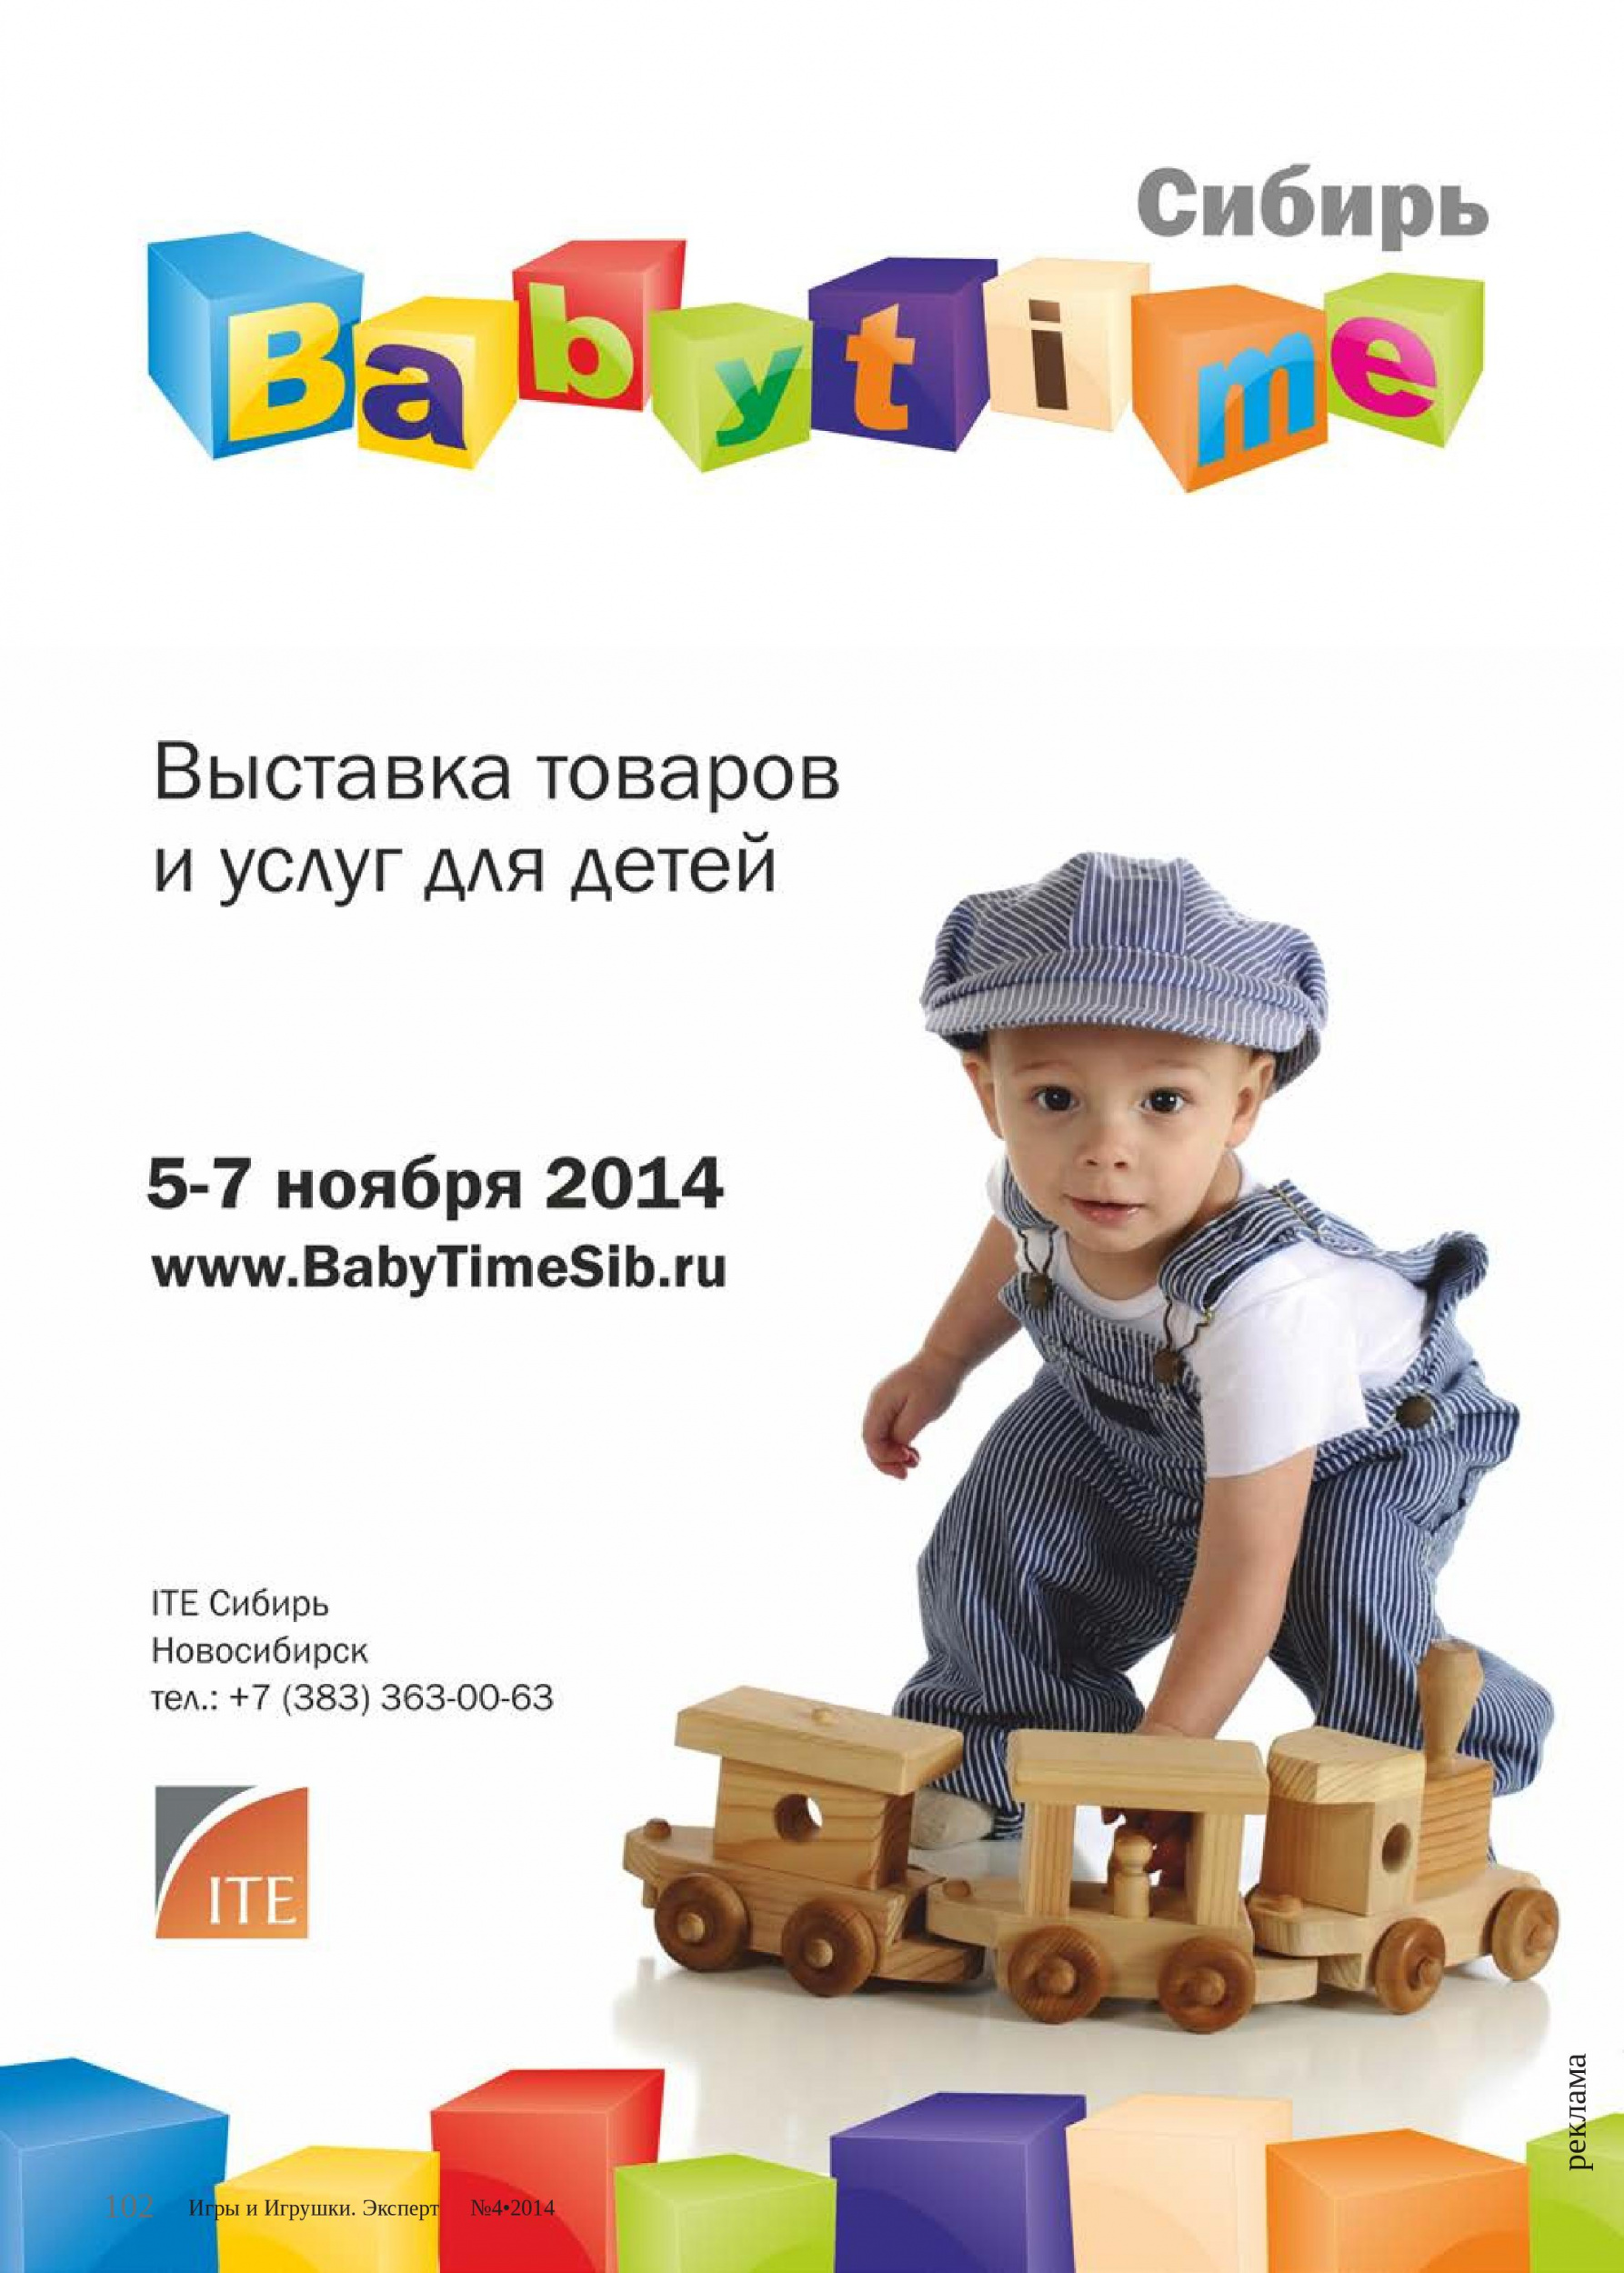 Выставка «BabyTime-Сибирь-2014»: всё лучшее детям!